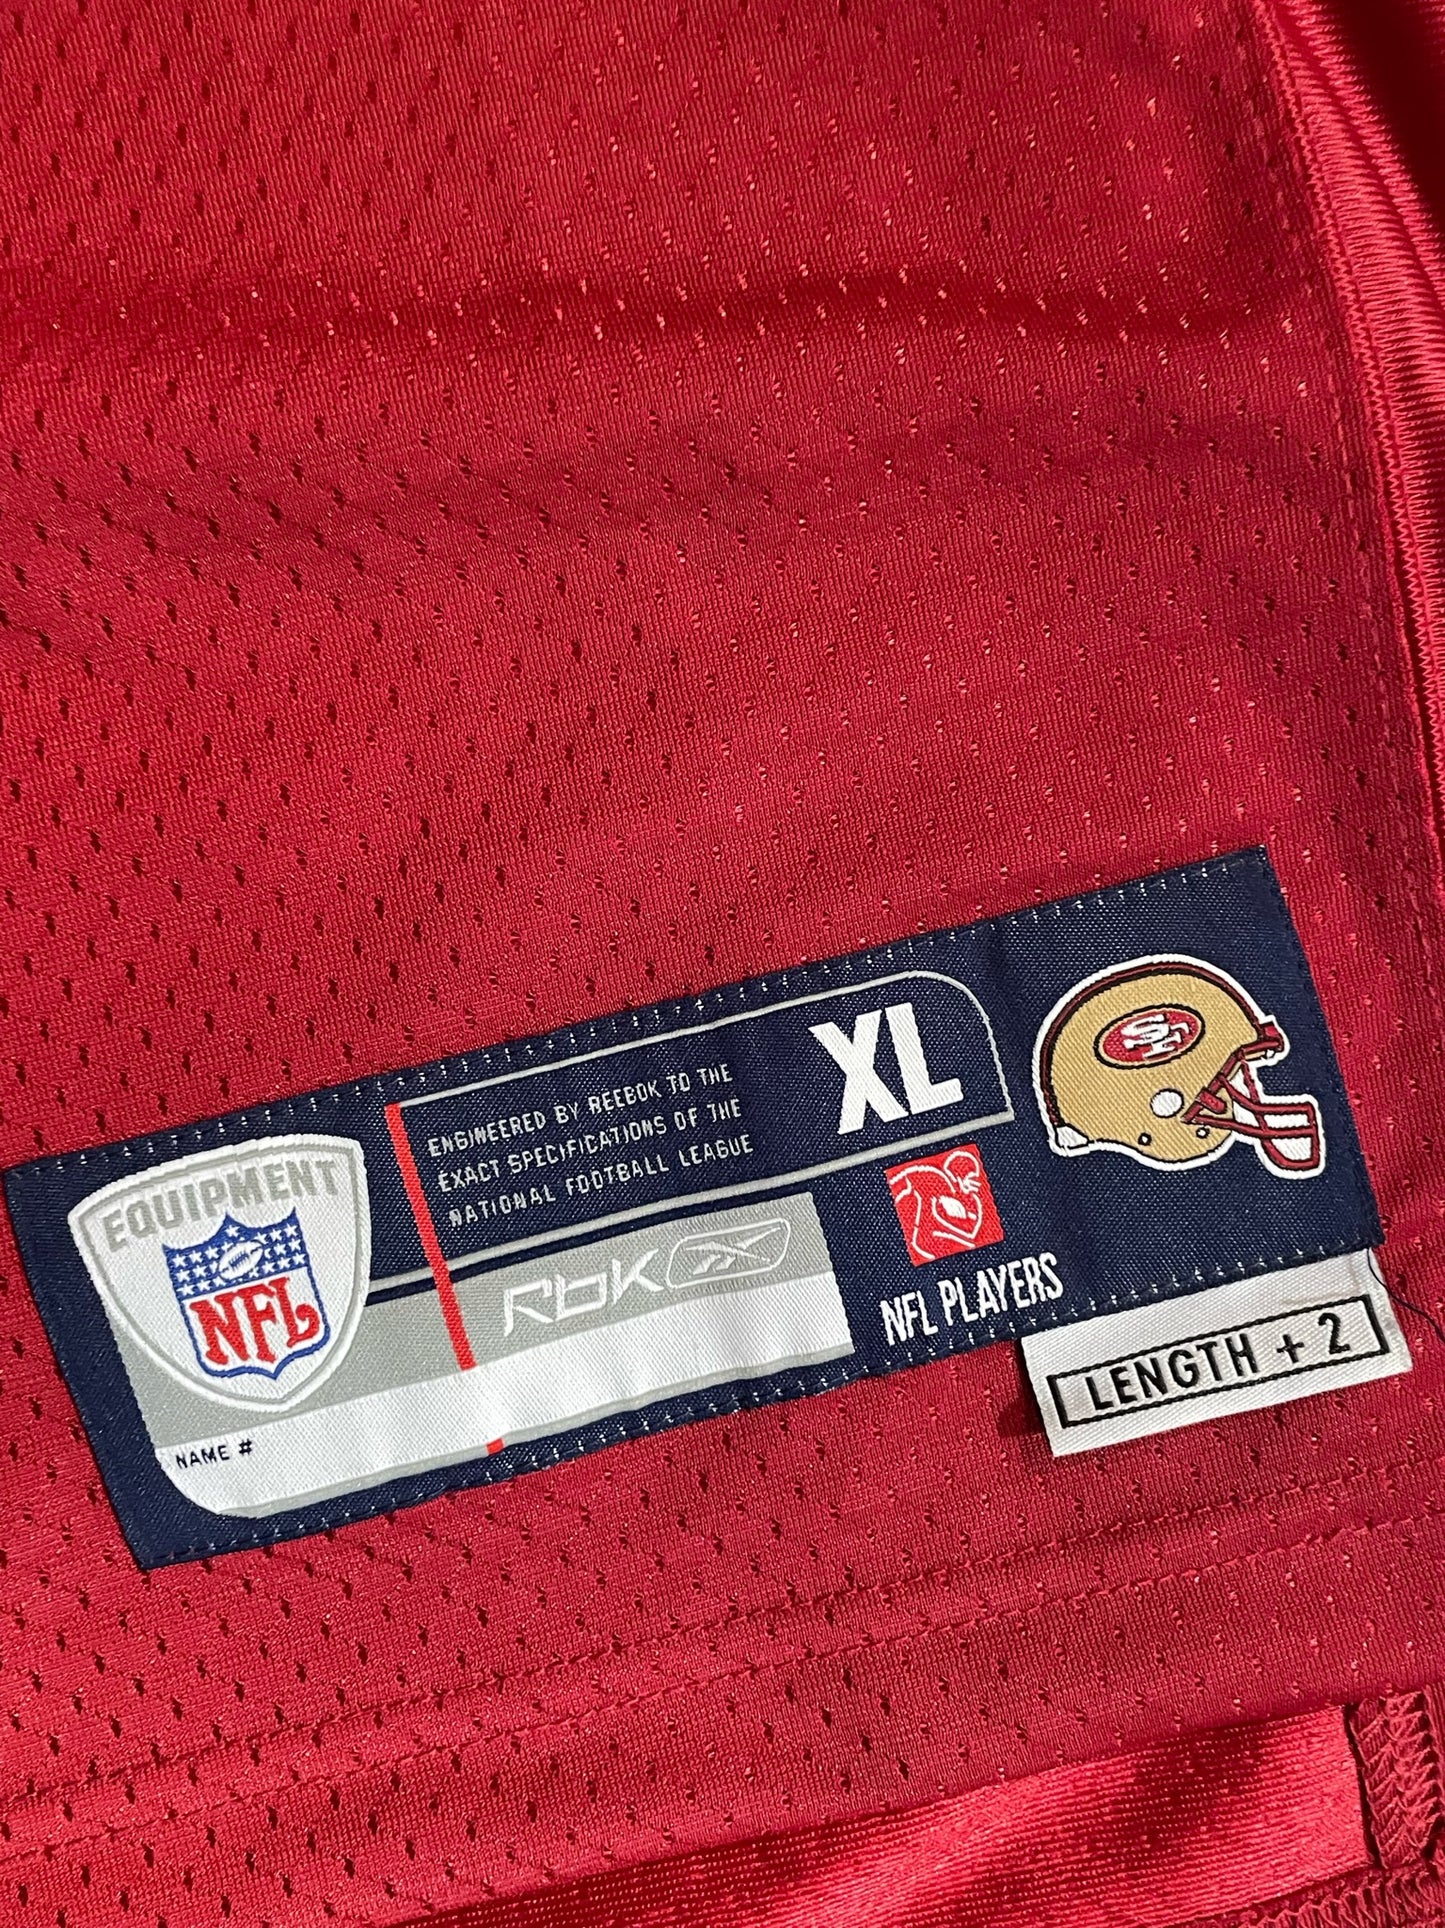 REEBOK SAN FRANCISCO 49ERS "V. DAVIS" NFL FOOTBALL JERSEY  SZ: XL